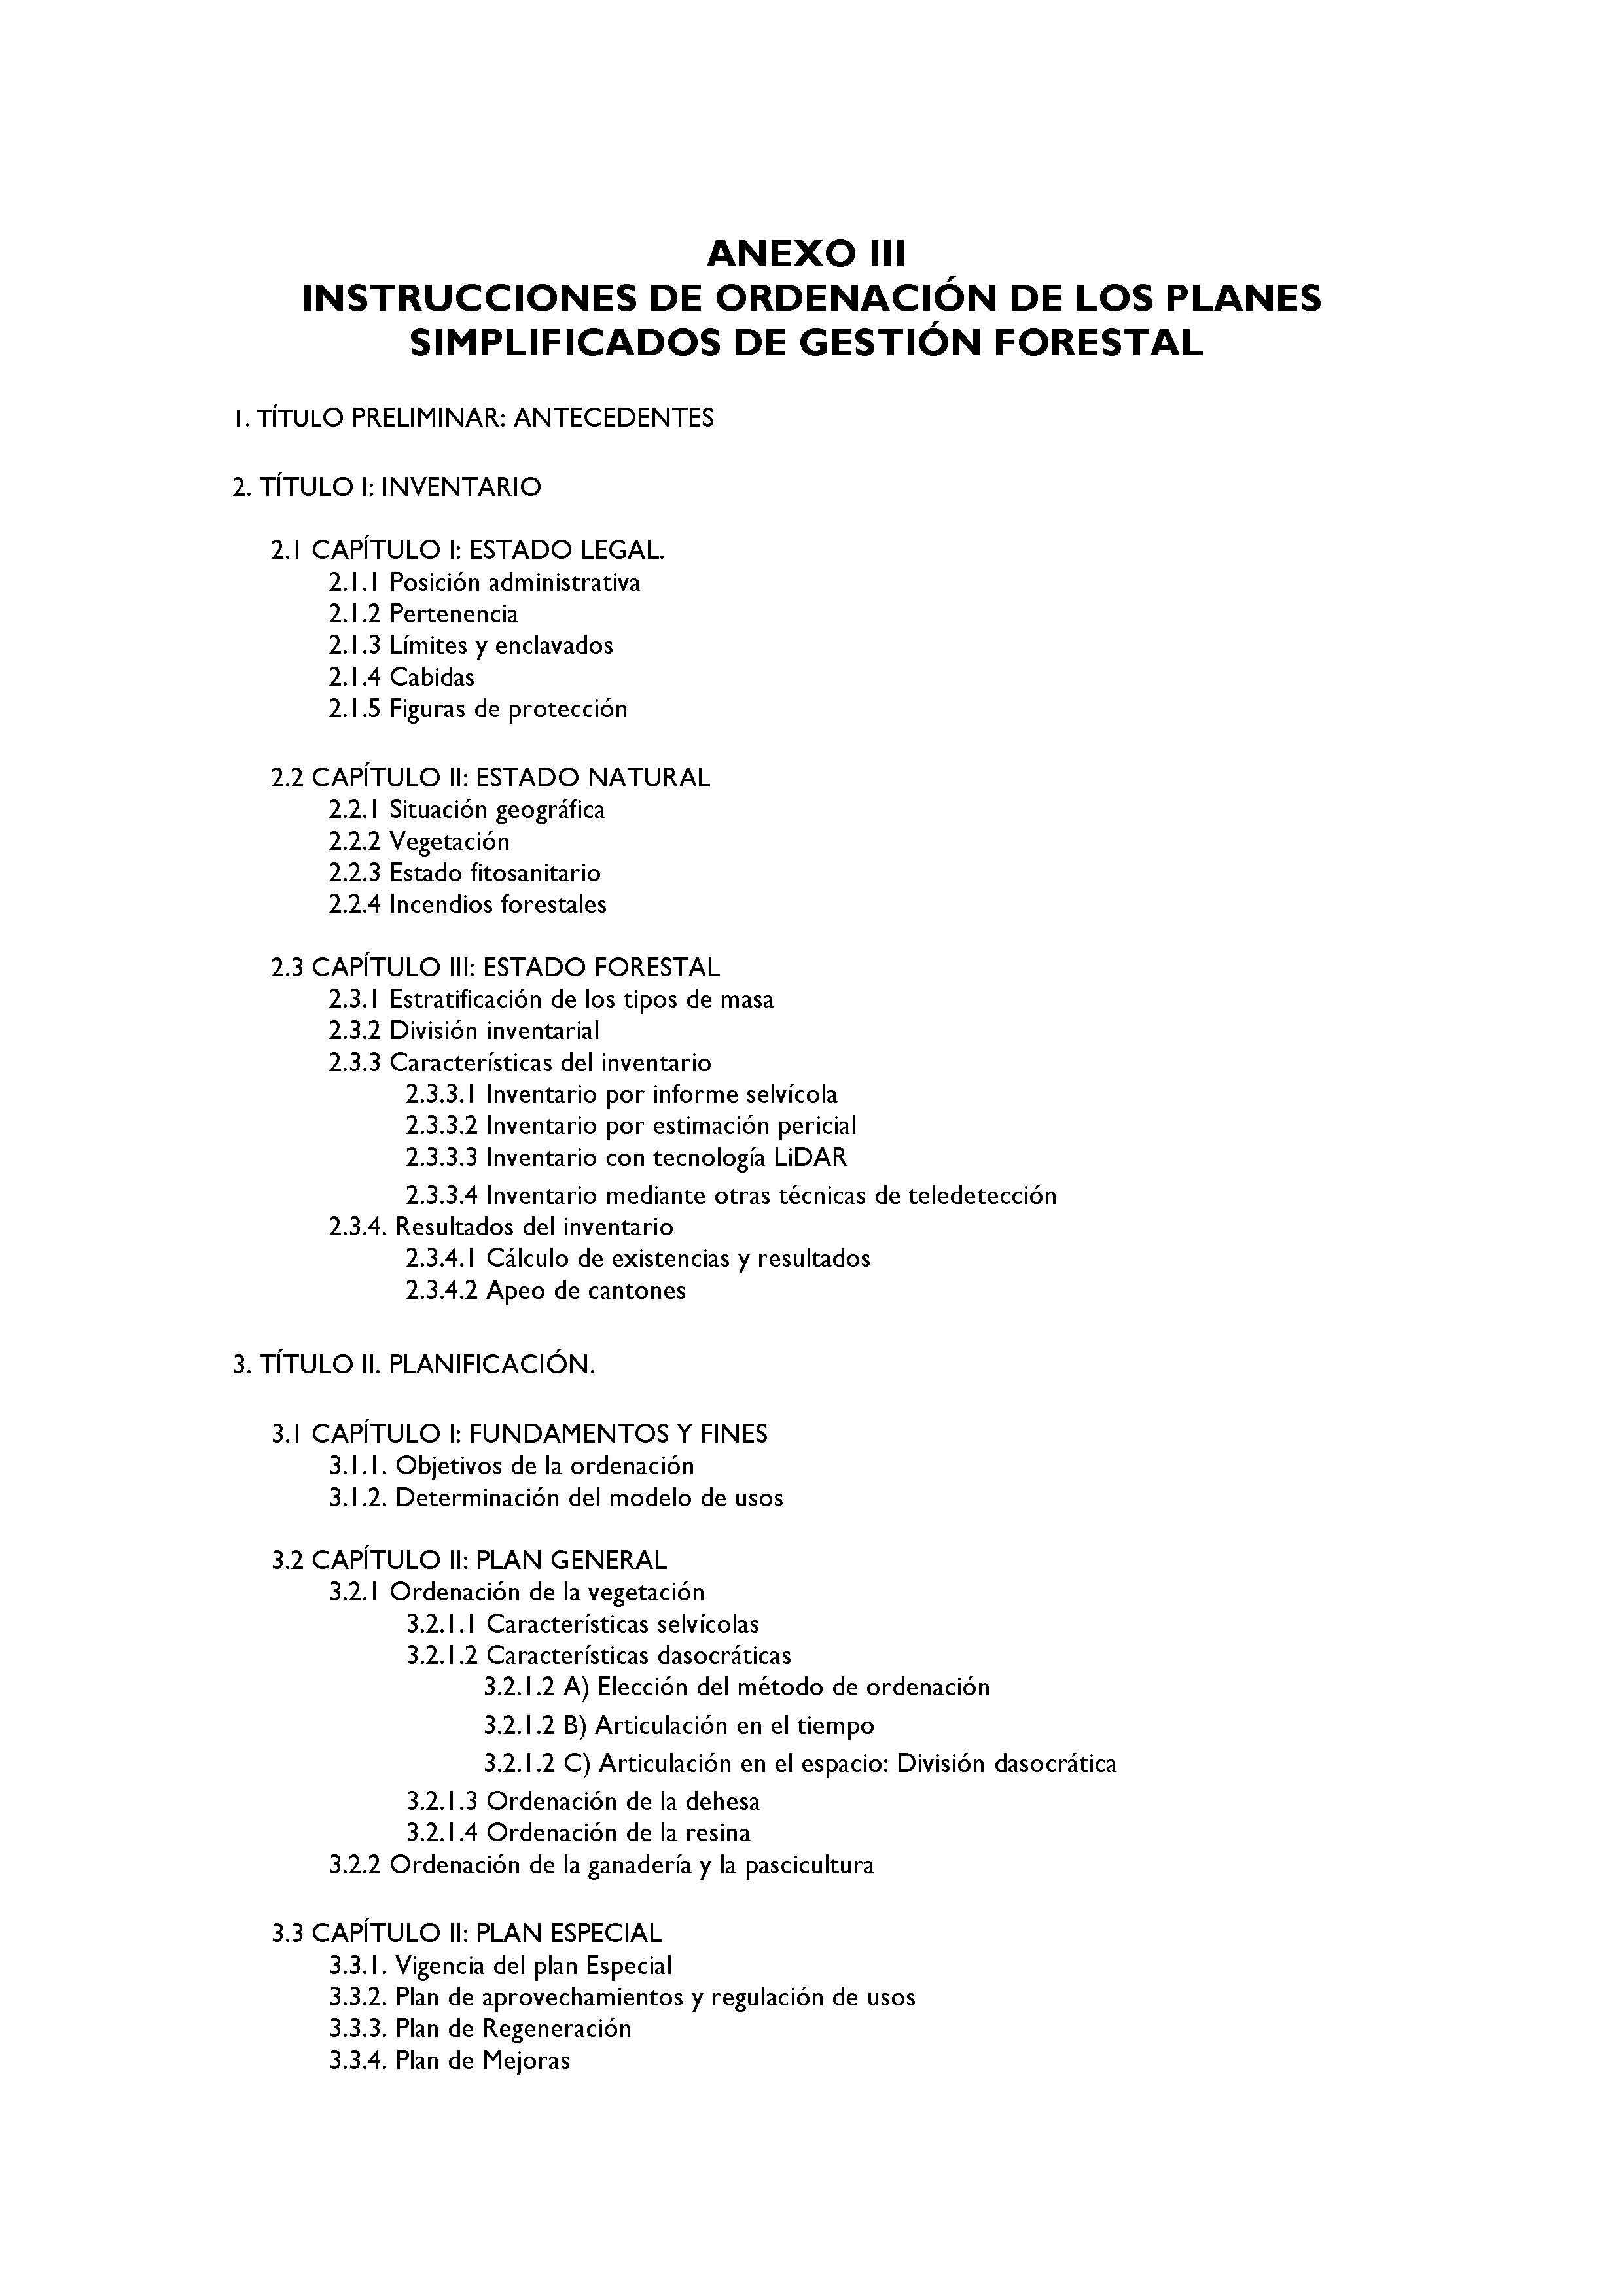 ANEXO - INSTRUCCIONES DE ORDENACIÓN DE LOS PROYECTOS DE ORDENACIÓN DE MONTES Pag 81